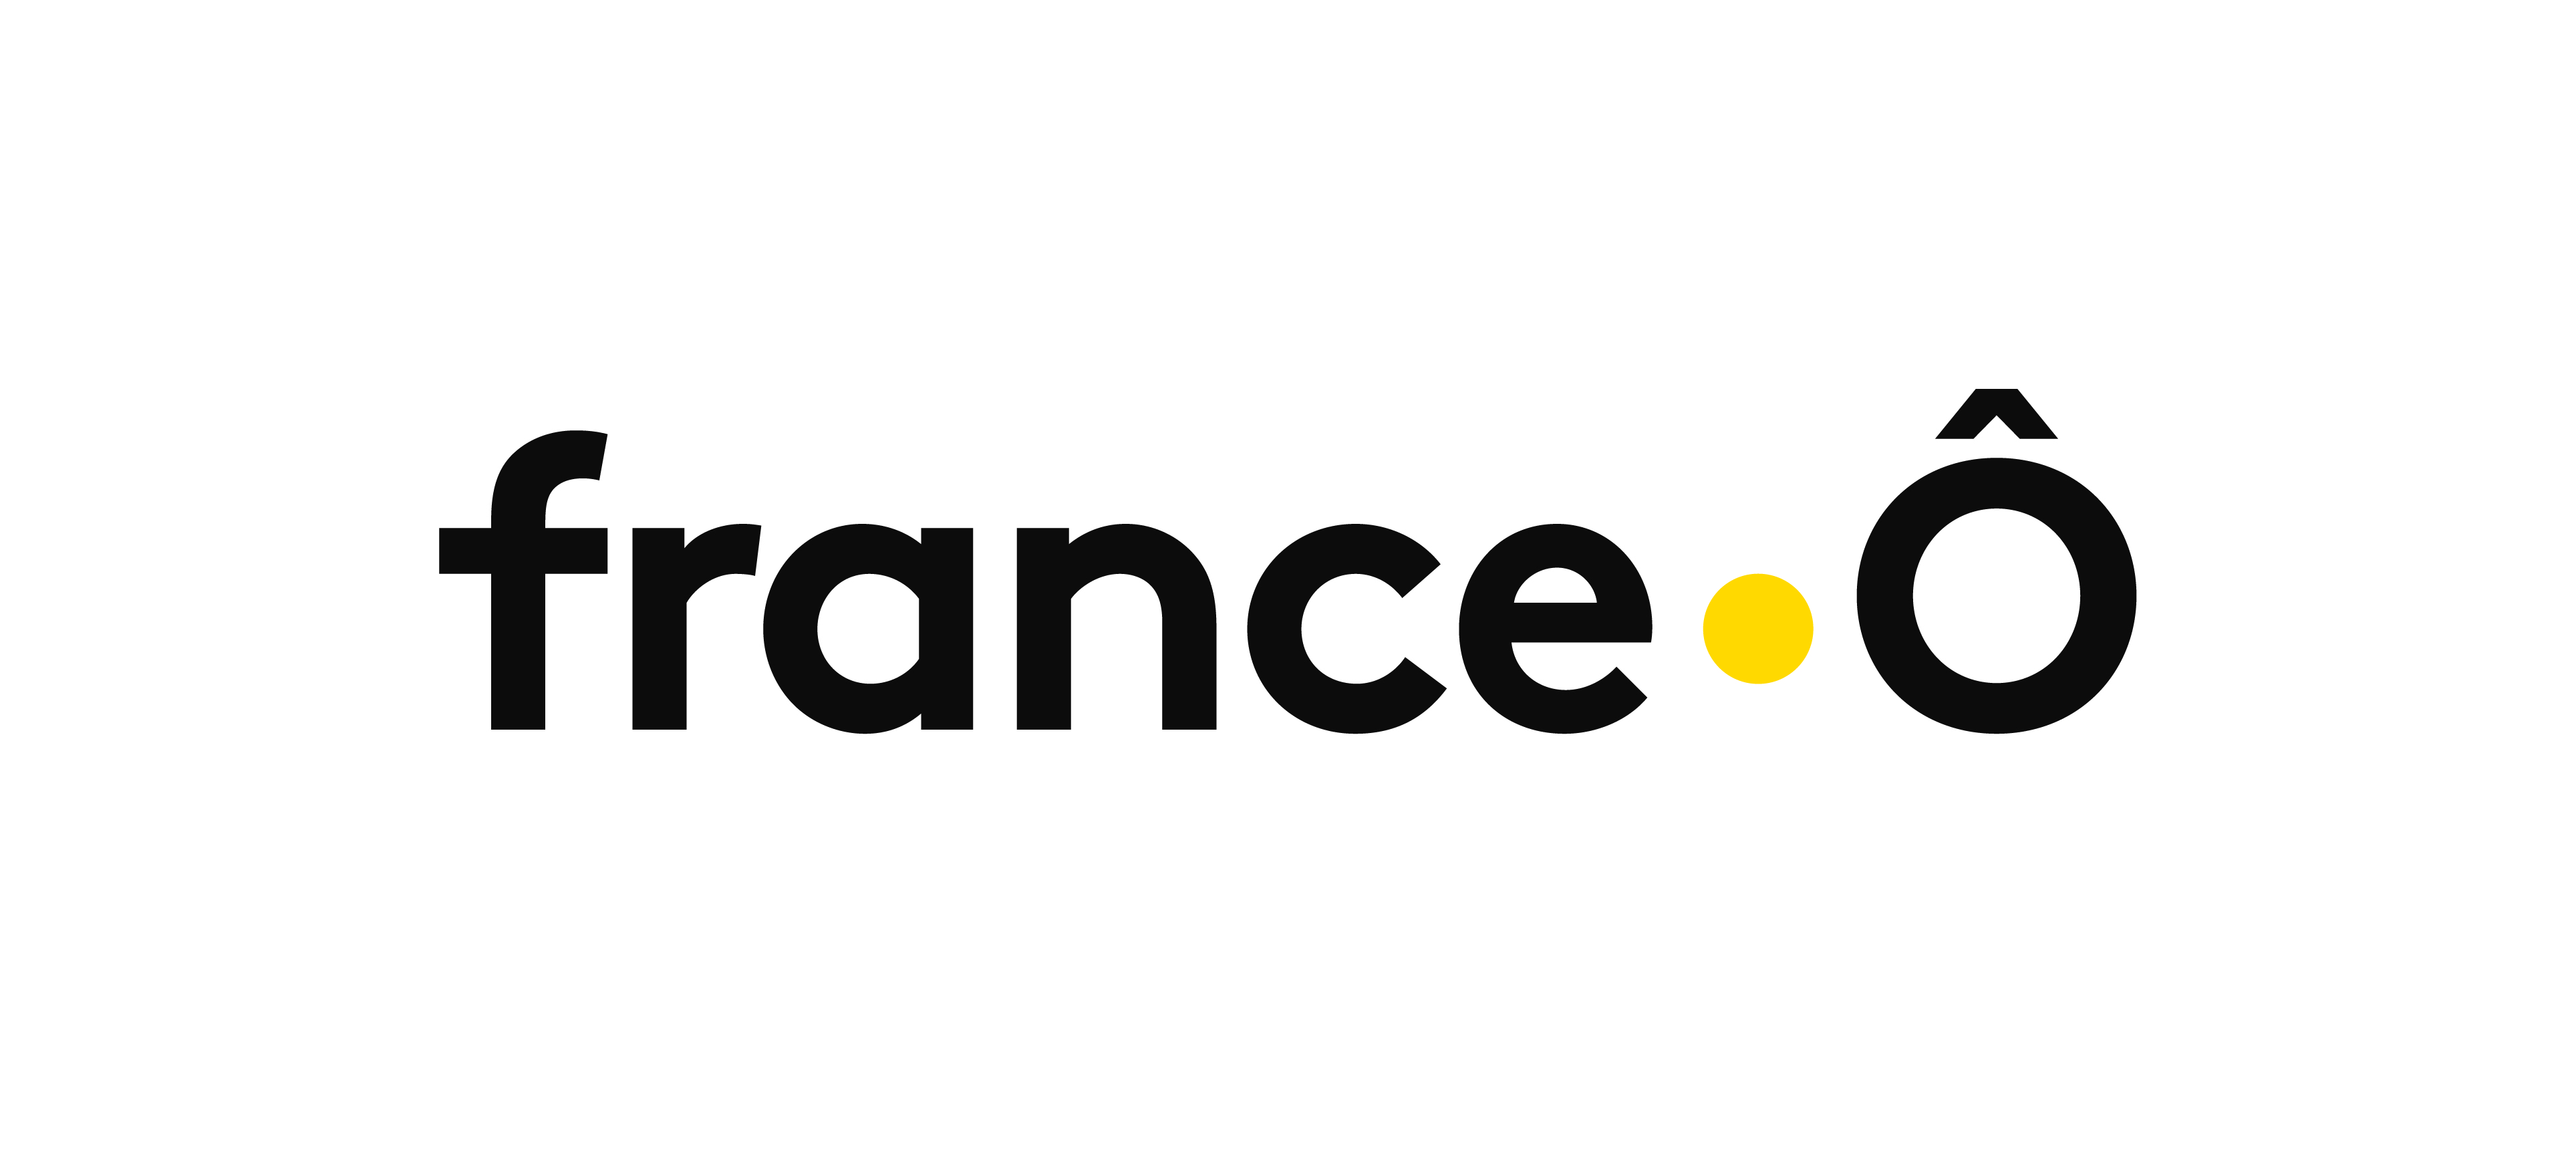 Les organisations syndicales de France Télévisions et le syndicat des producteurs indépendants plaident pour le maintien de France Ô